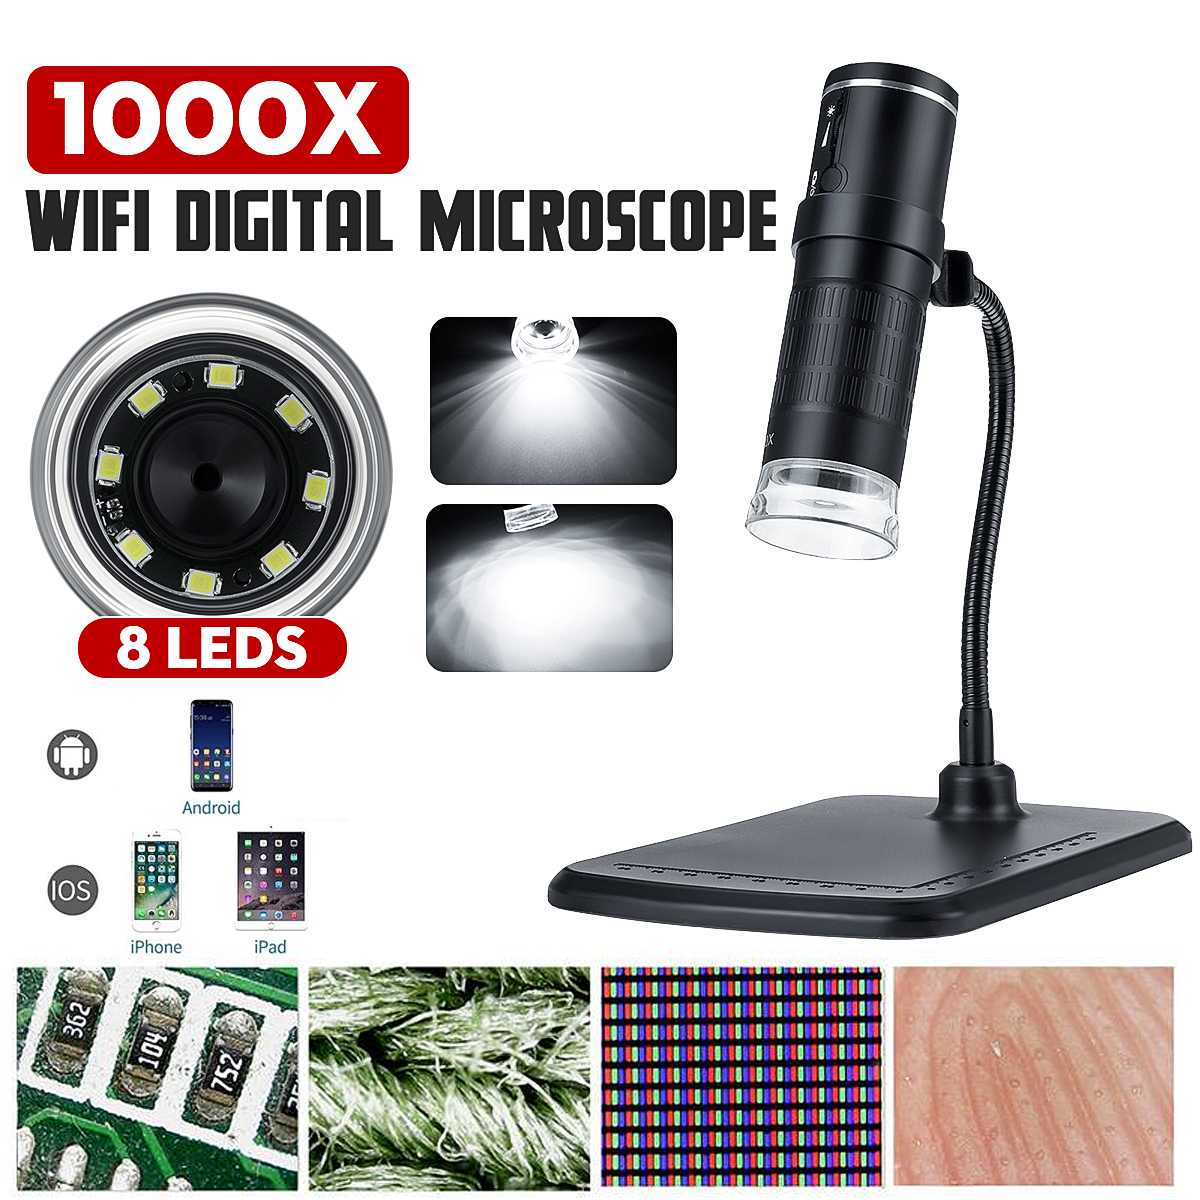 Wifi Digital Microscope 1000x กล้องจุลทรรศน์พกพา กล้องส่องไตรโคม 1000 เท่า